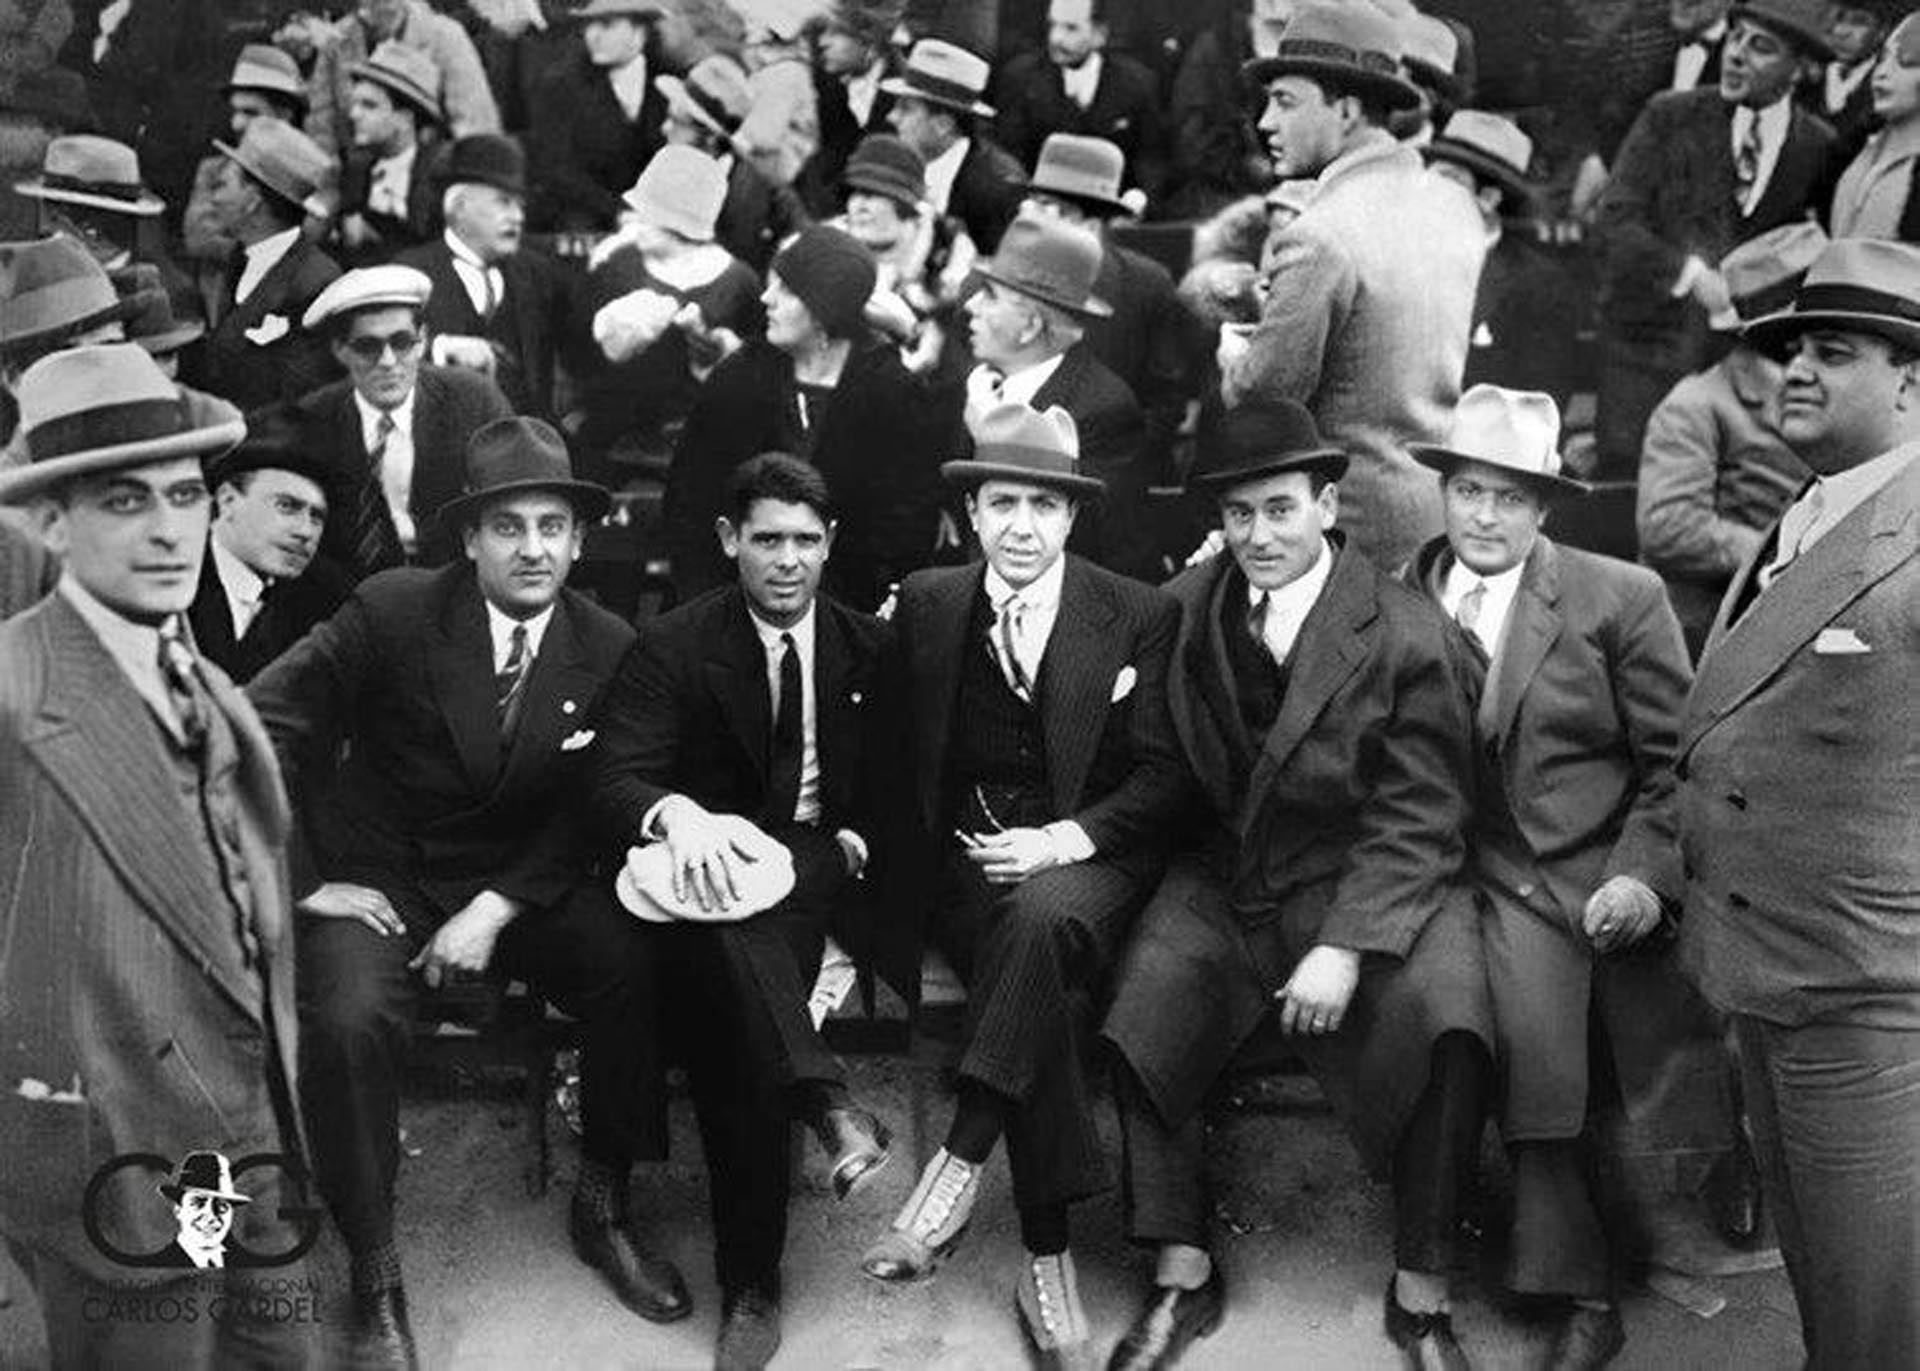 Gardel con sus amigos de F.C. Barcelona, Vincenç Piera (izq.) y Franz Platko (der.) tomada el 02 septiembre 1928, Gran Parque Central de Montevideo, Campo de deportes del Club Nacional de Football